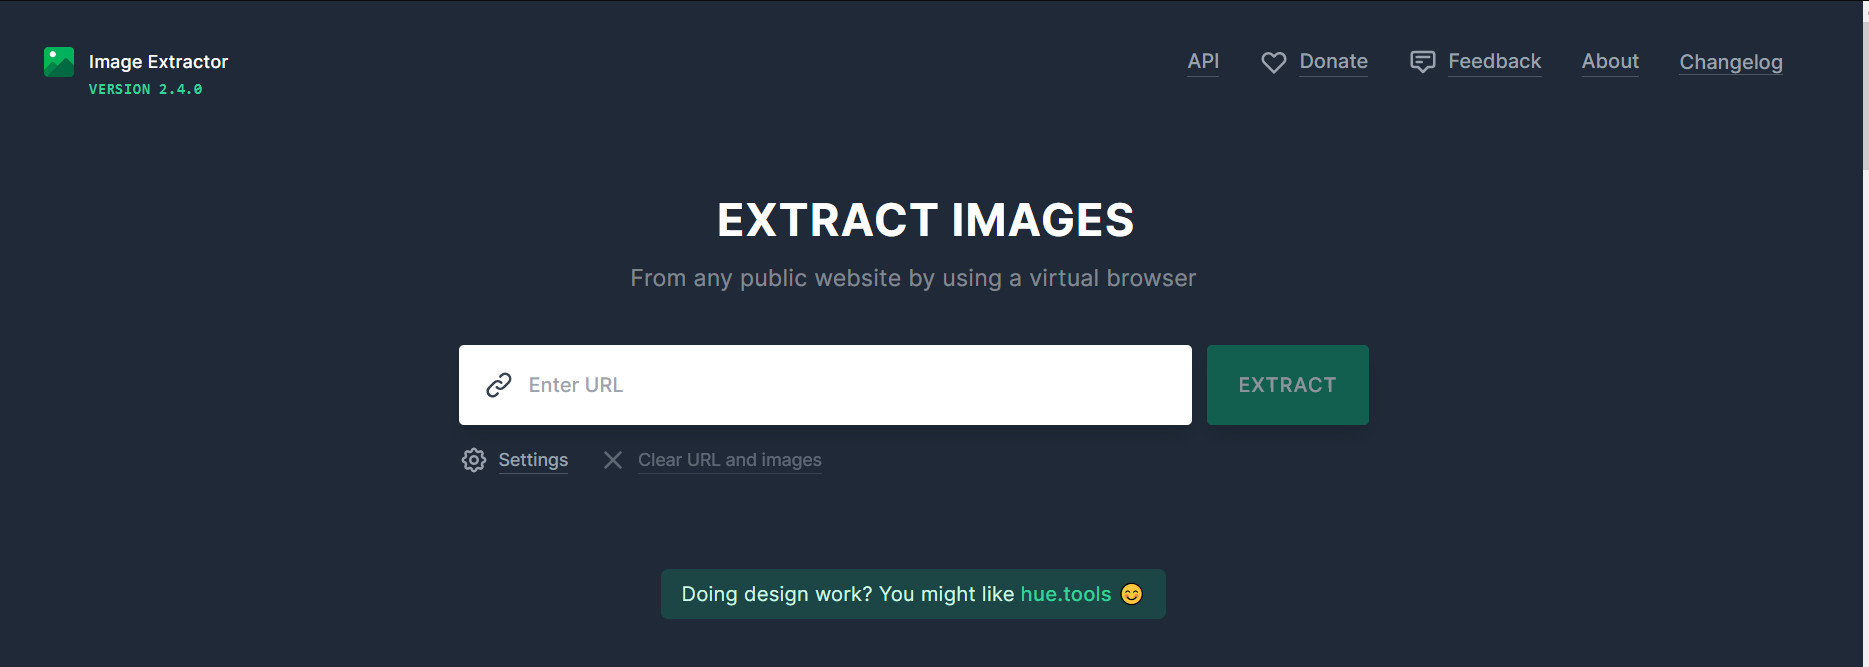 extract.pics，一键提取下载某个网页所有图片